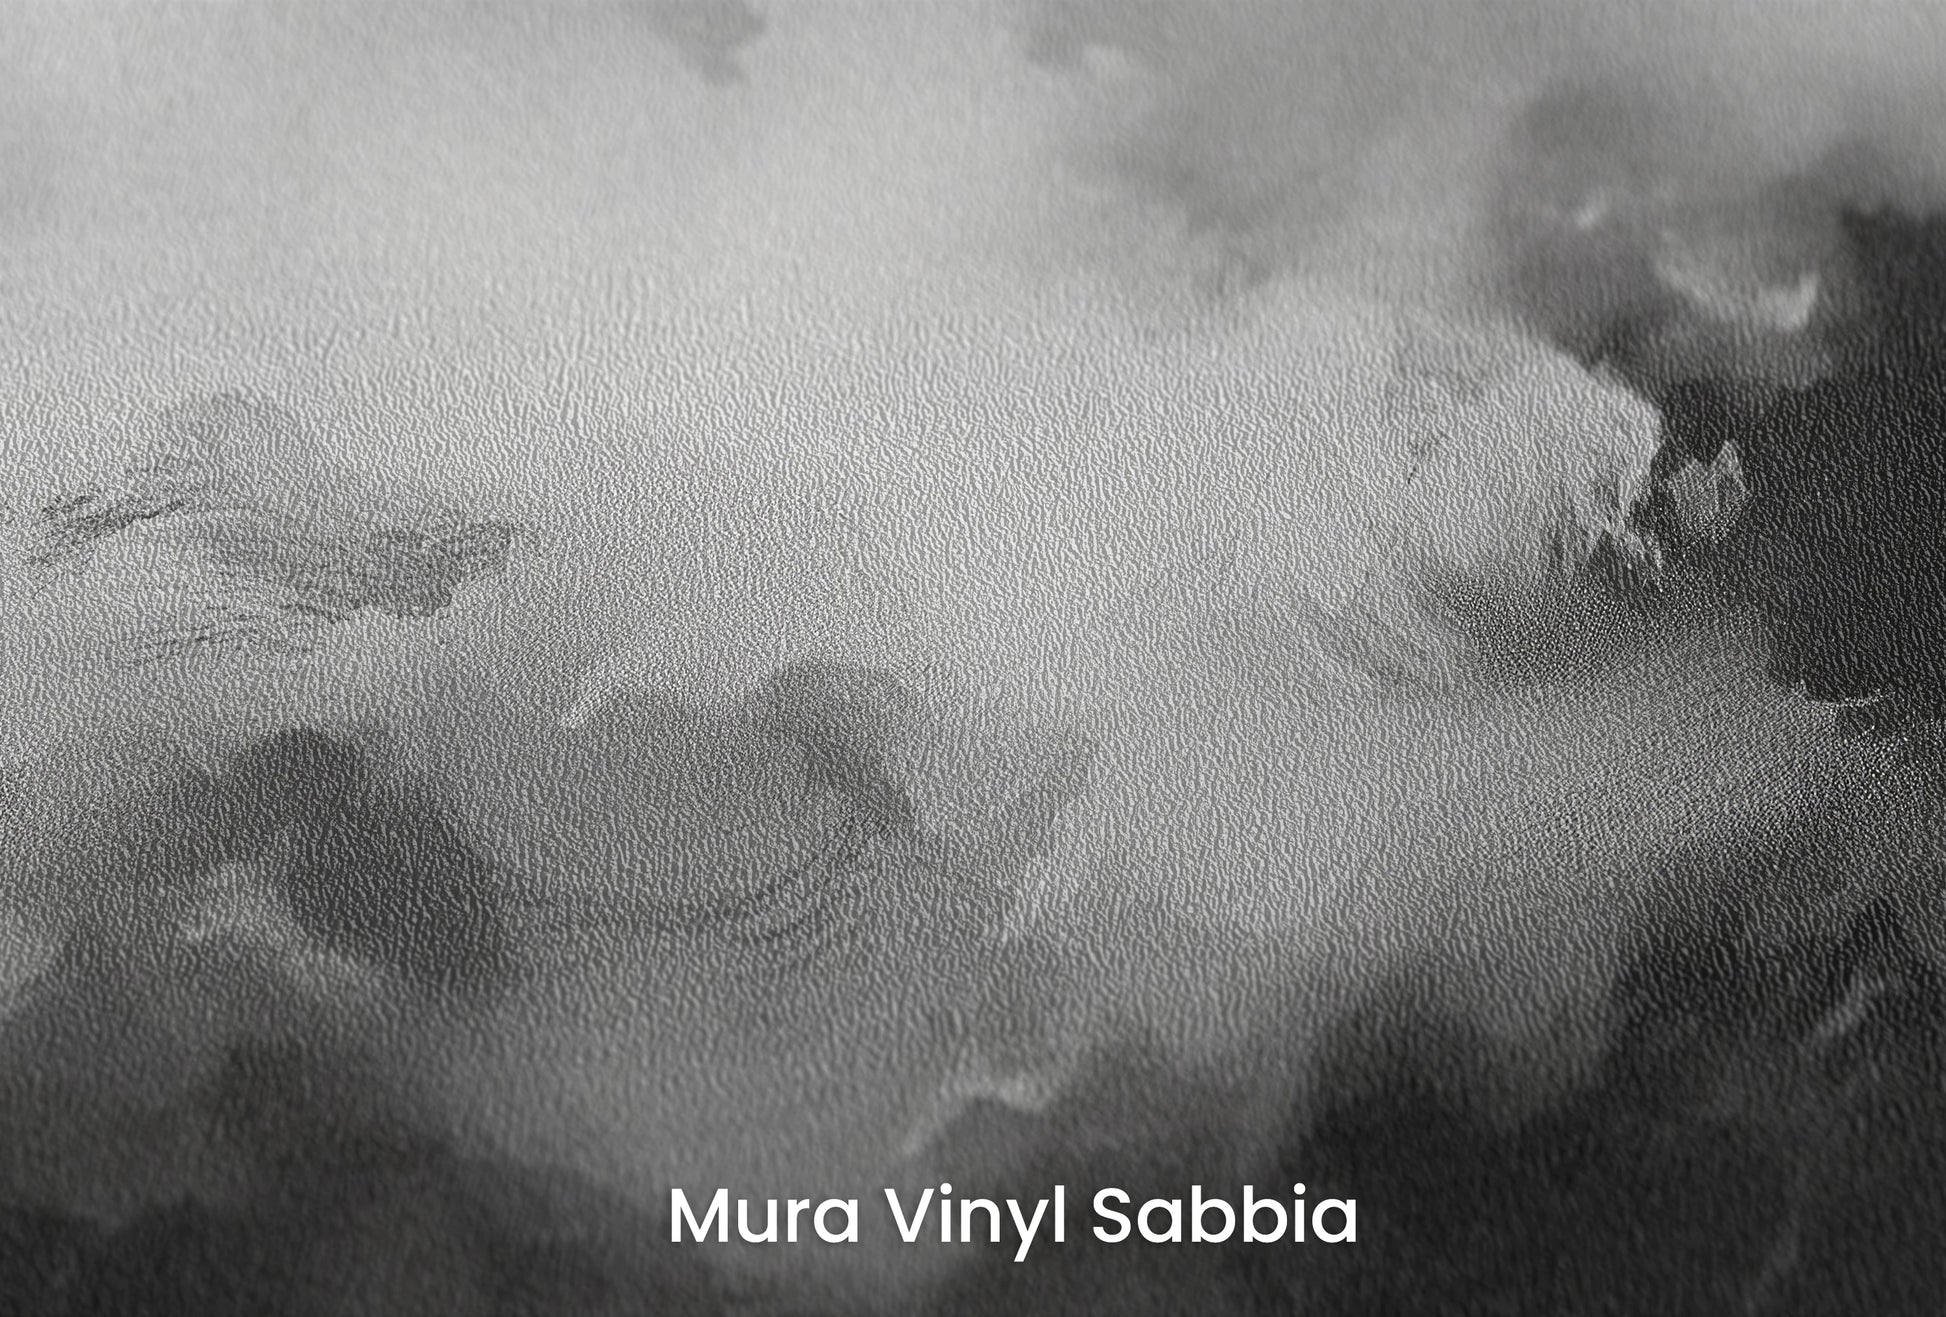 Zbliżenie na artystyczną fototapetę o nazwie Storm's Palette na podłożu Mura Vinyl Sabbia struktura grubego ziarna piasku.